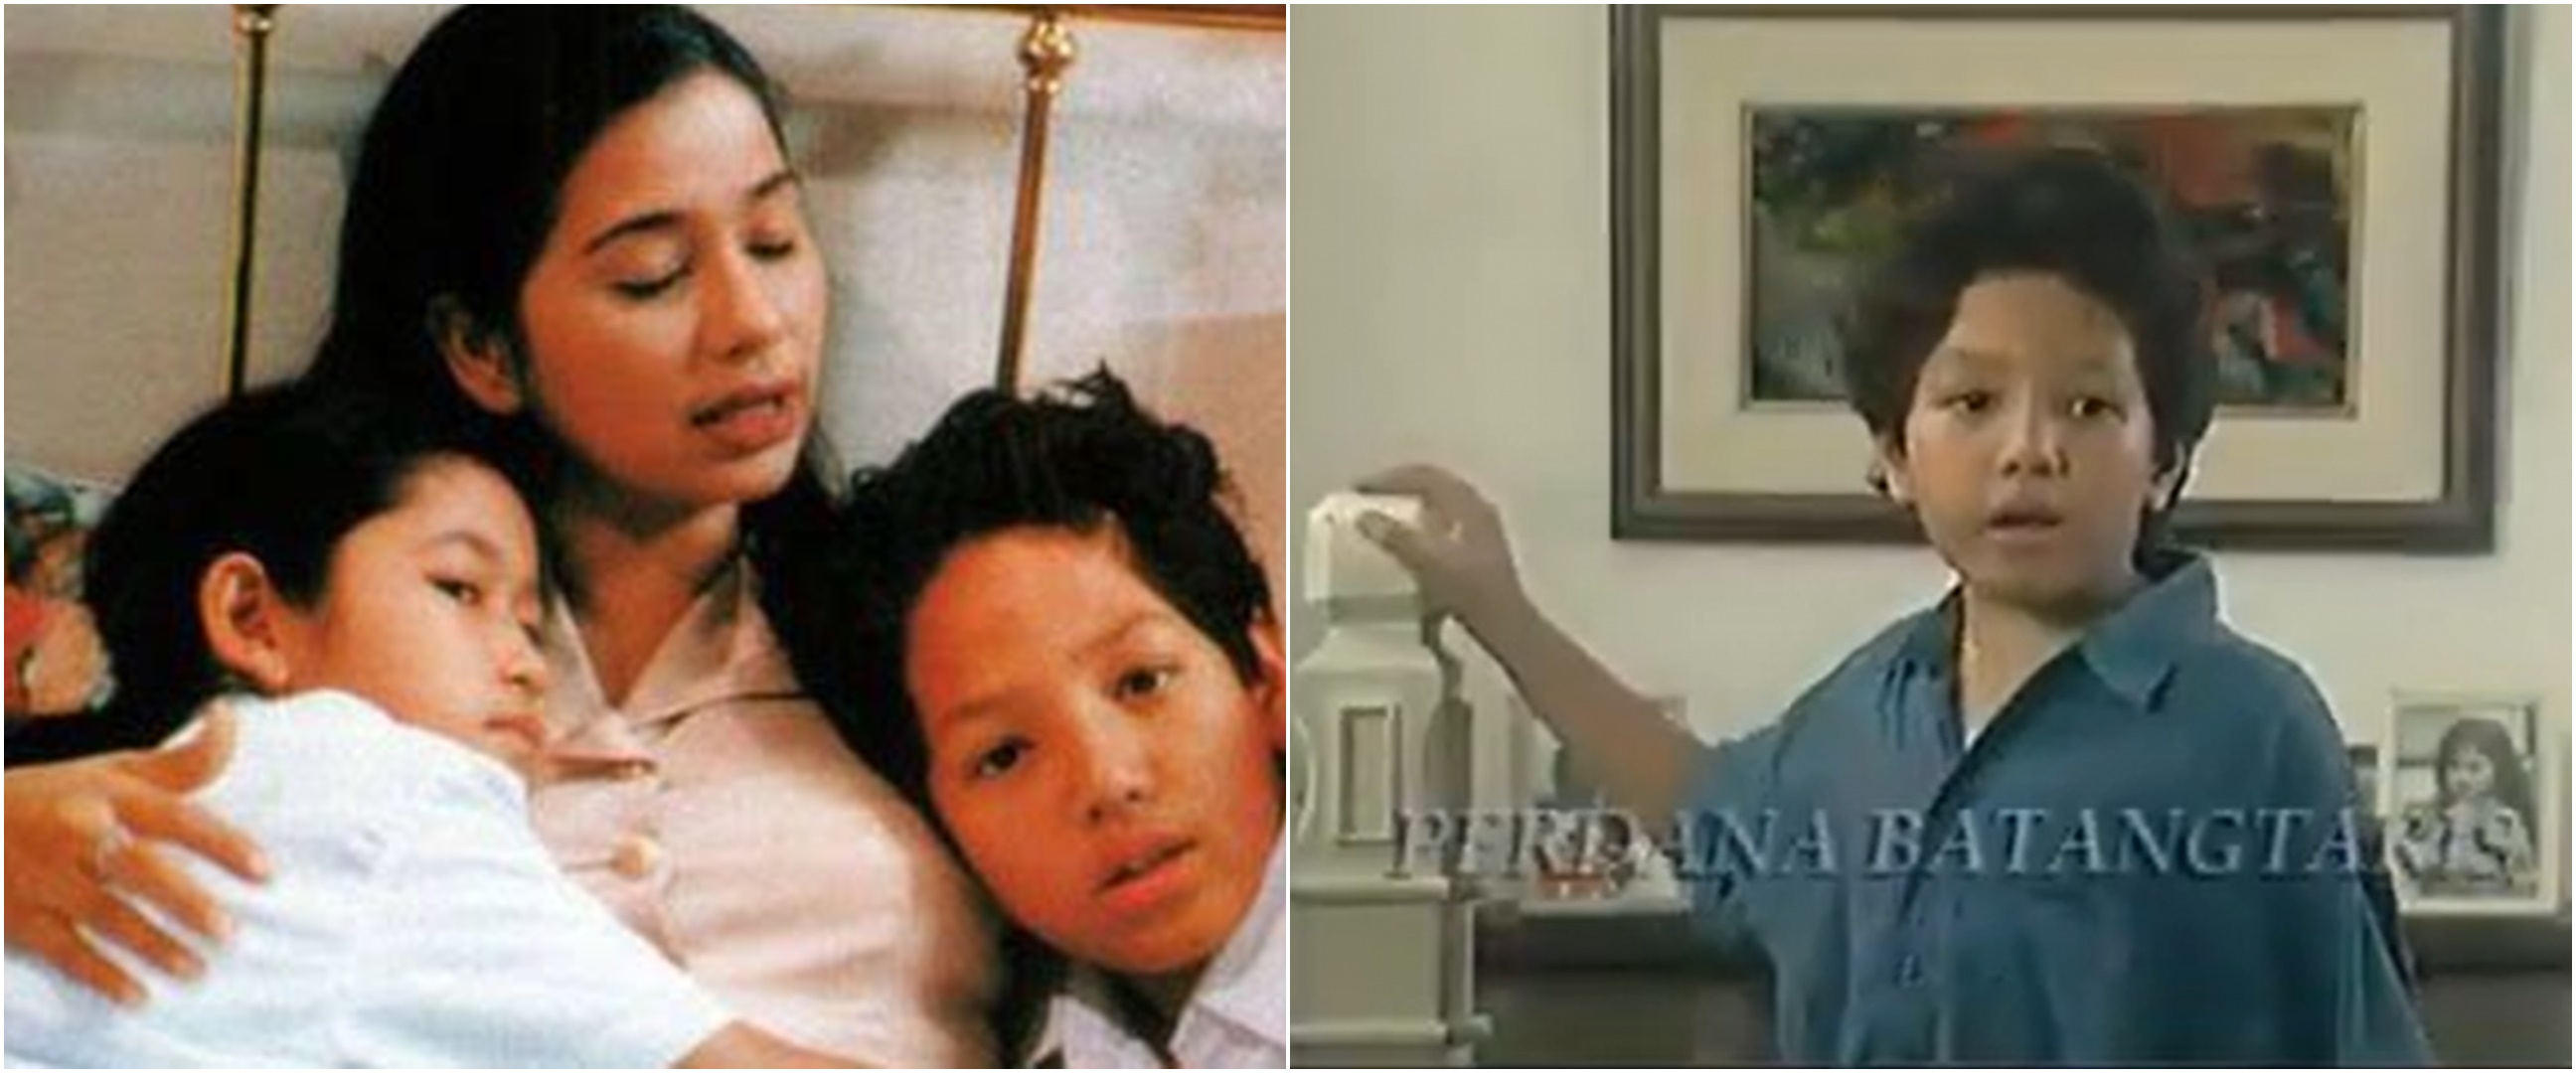 Jadi anak cowok Ayu Azhari di 'Noktah Merah Perkawinan', ini 9 potret terbaru Perdana Batangtaris